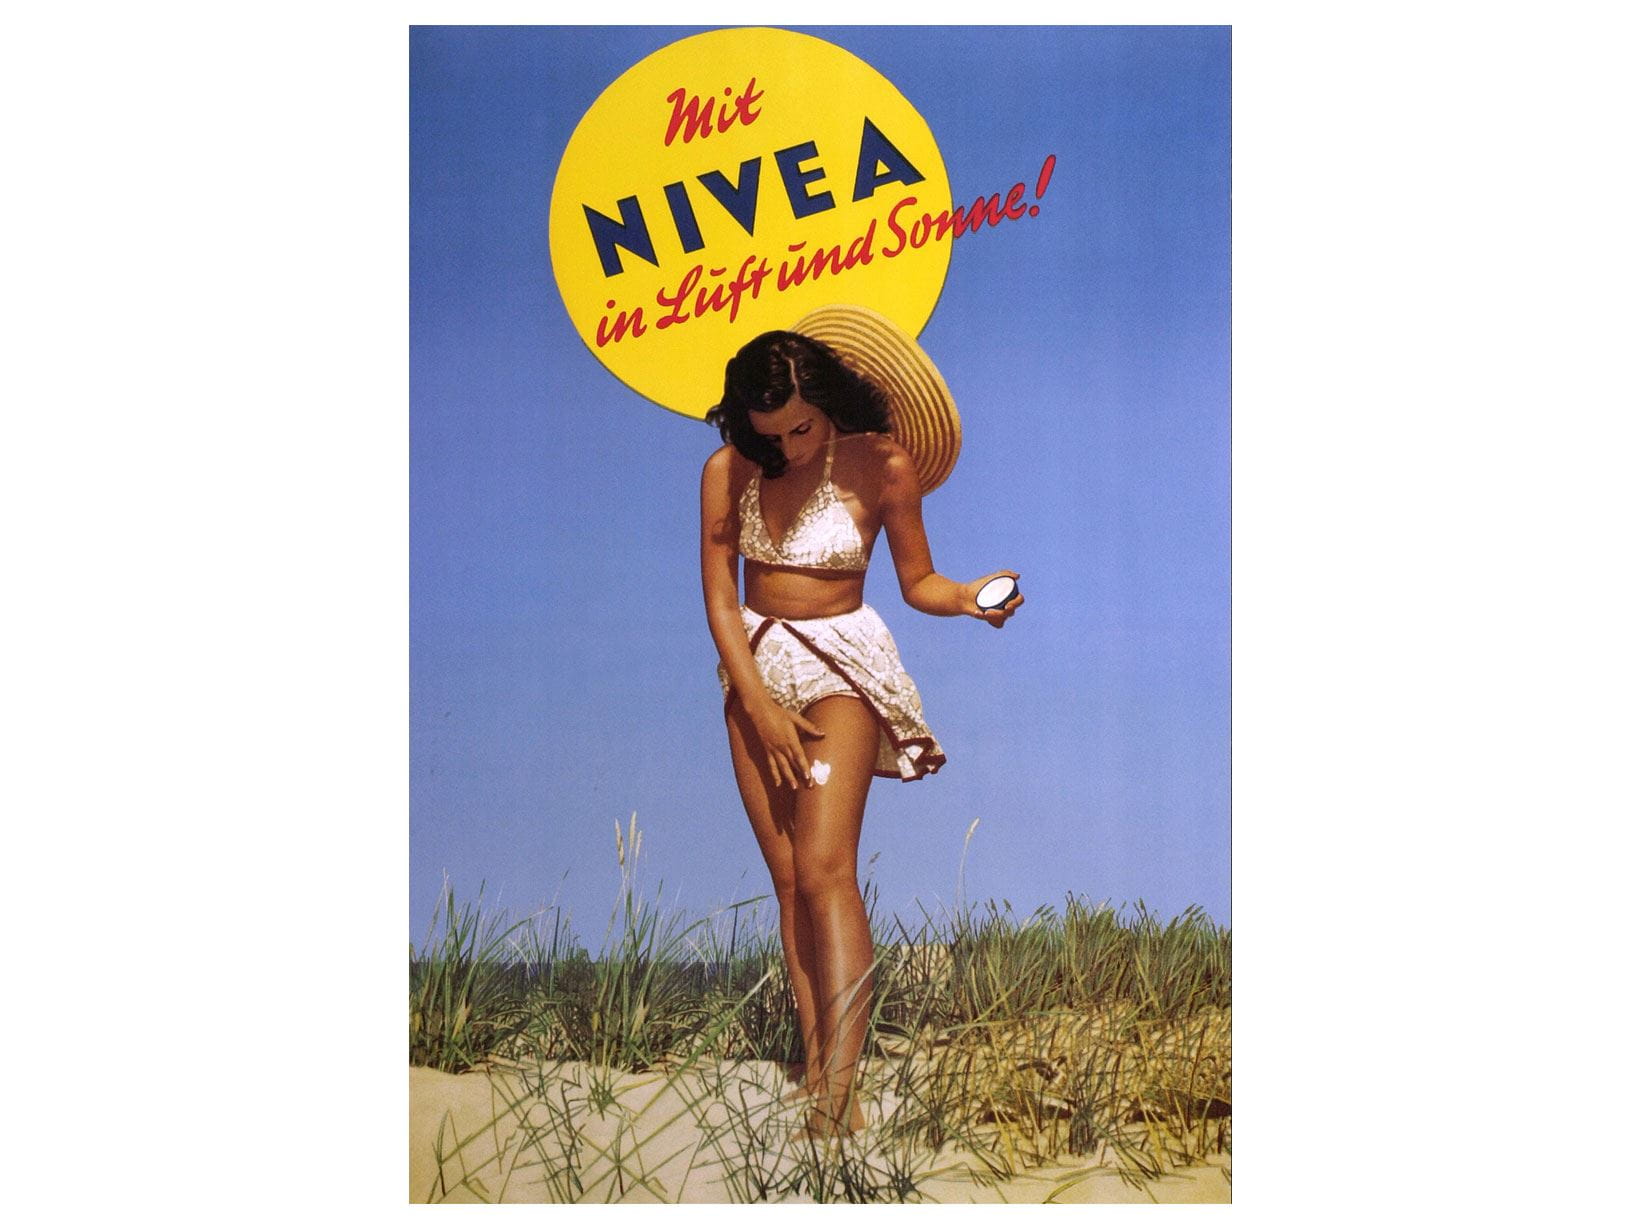 NIVEA Werbeplakat von 1950: Mit NIVEA in Luft und Sonne!